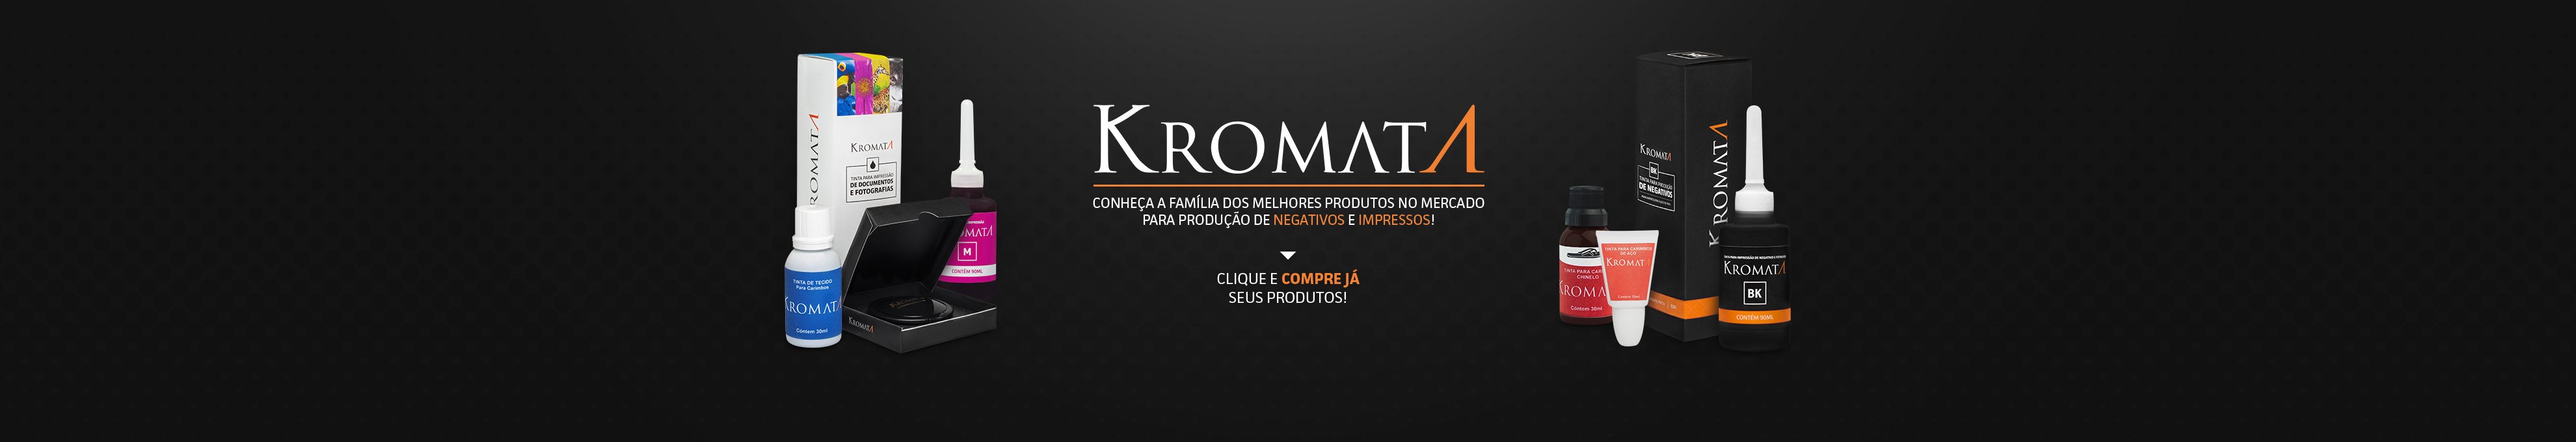 Kromata: Conheça a família dos melhores produtos no mercado para produção de negativos e impressos!